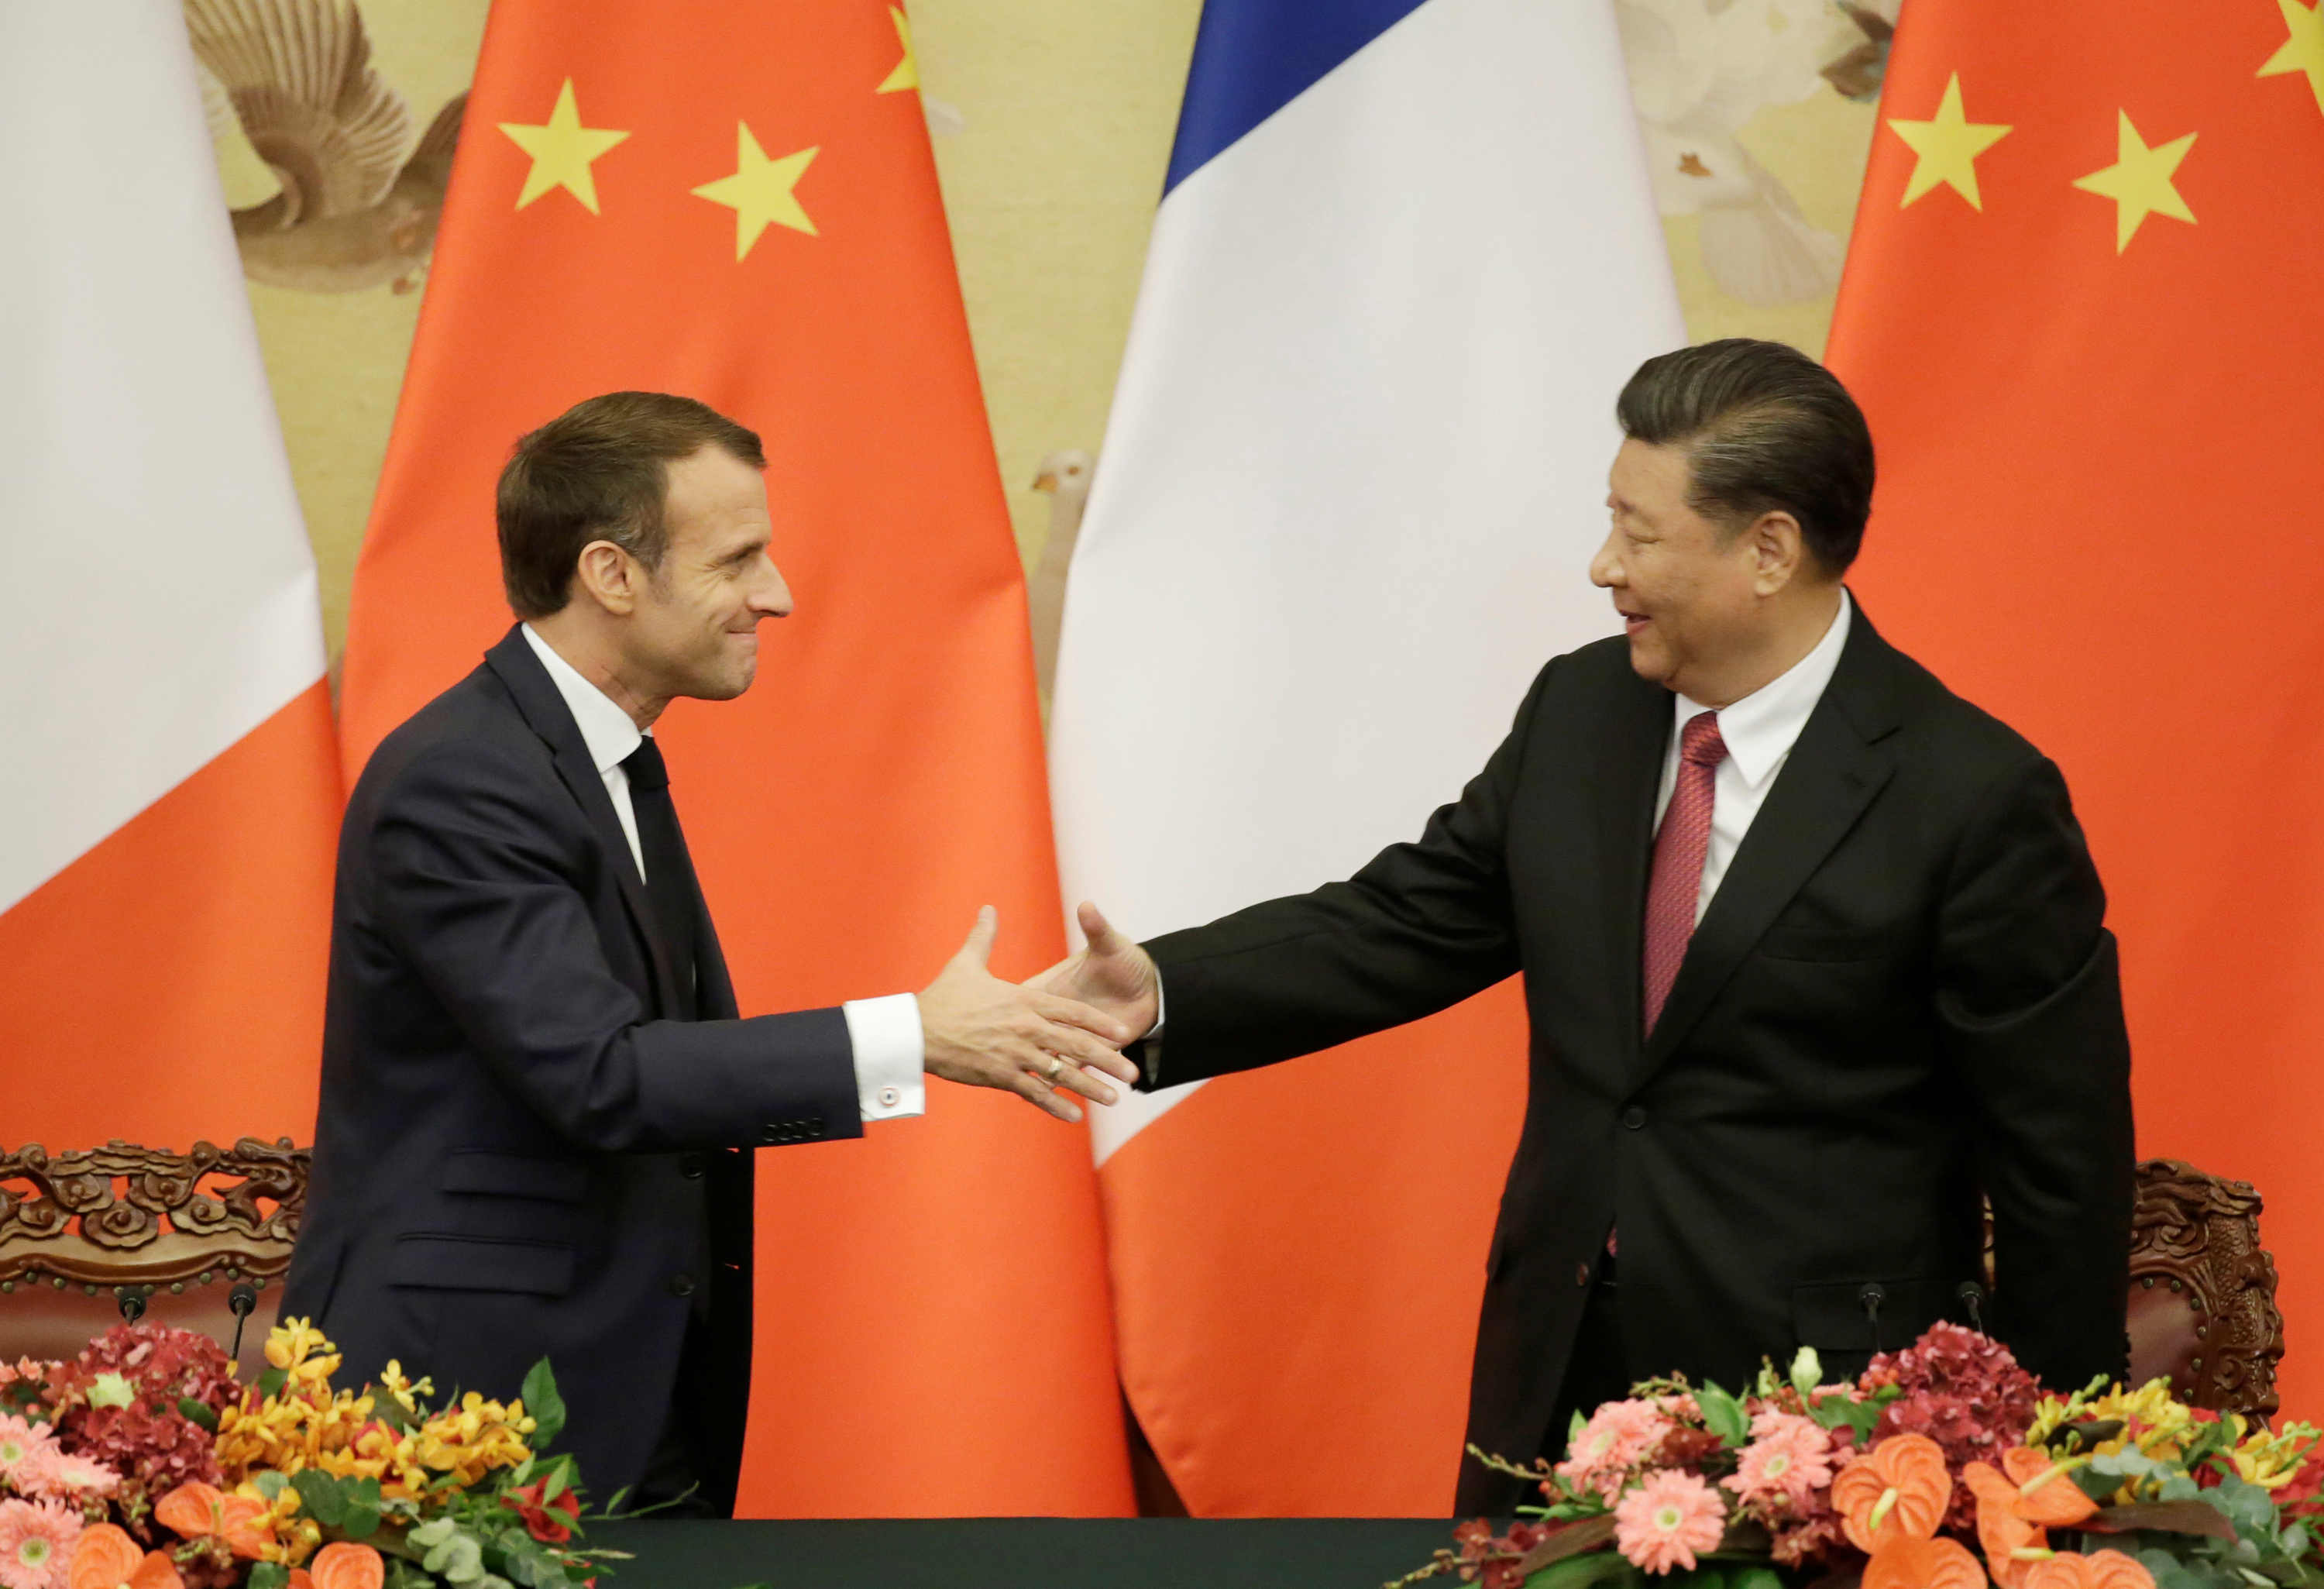 Macron en Chine : des contrats attendus pour les entreprises françaises